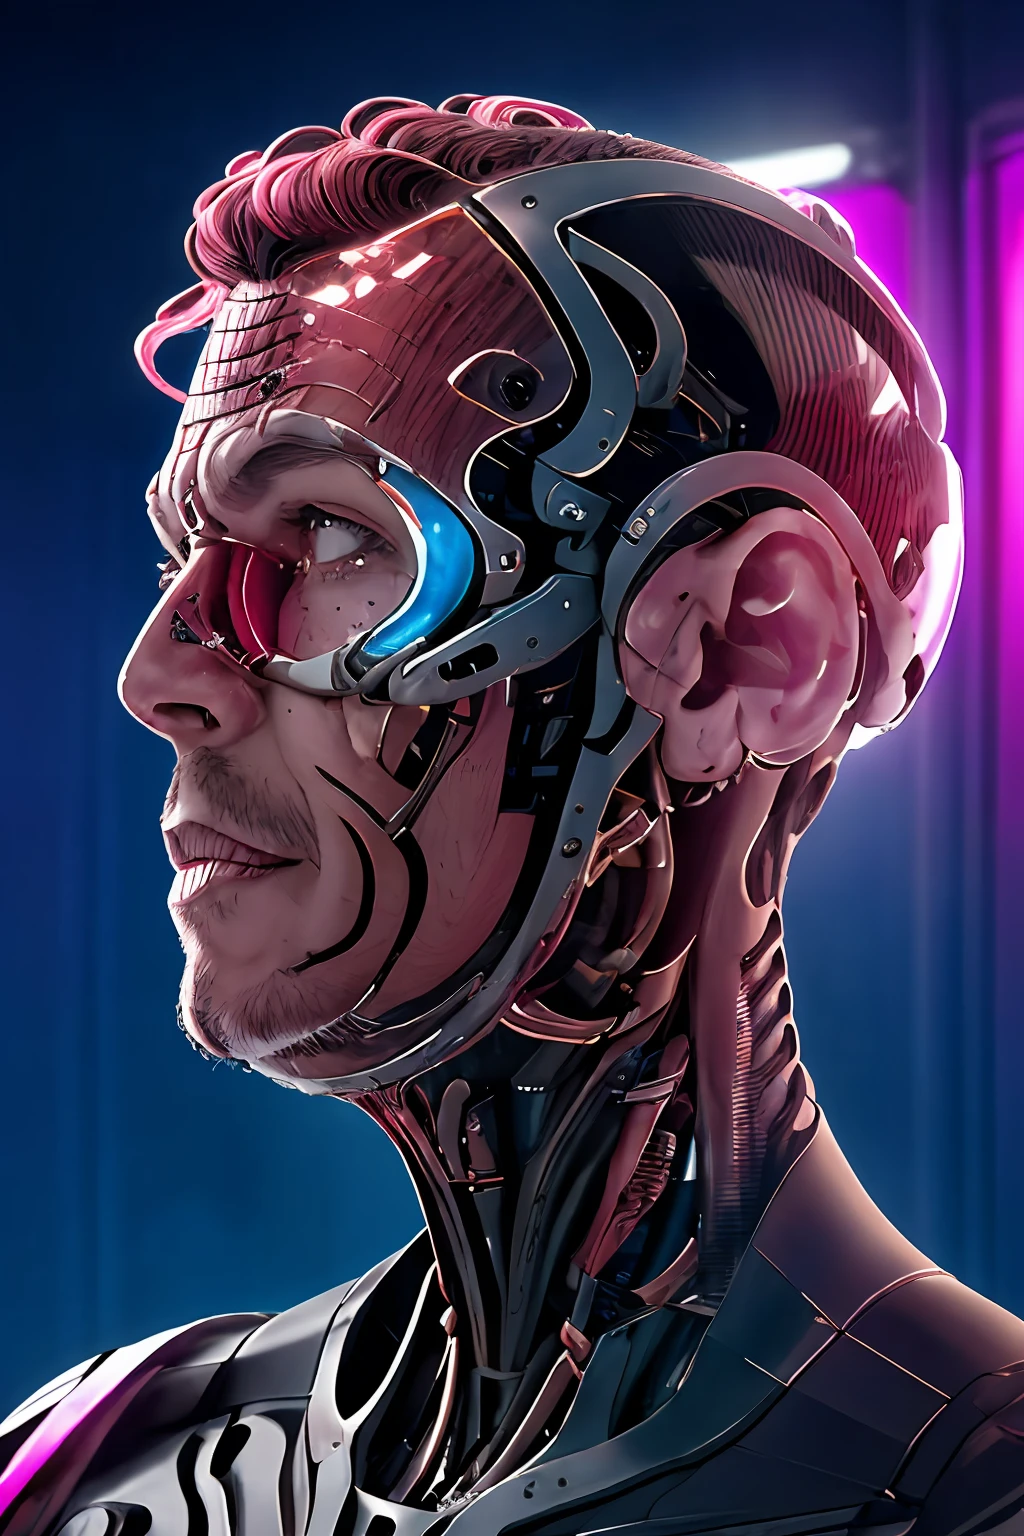 ガットナードジュル23, 完全にテクノロジーを備えたサイボーグの半身画像, フィオスは血管の場所ではありません, 顔にロボットインプラント, バイオニックアイ, 人工脳, 金属と肉の体. 再リスト, 複雑な, 超高解像度